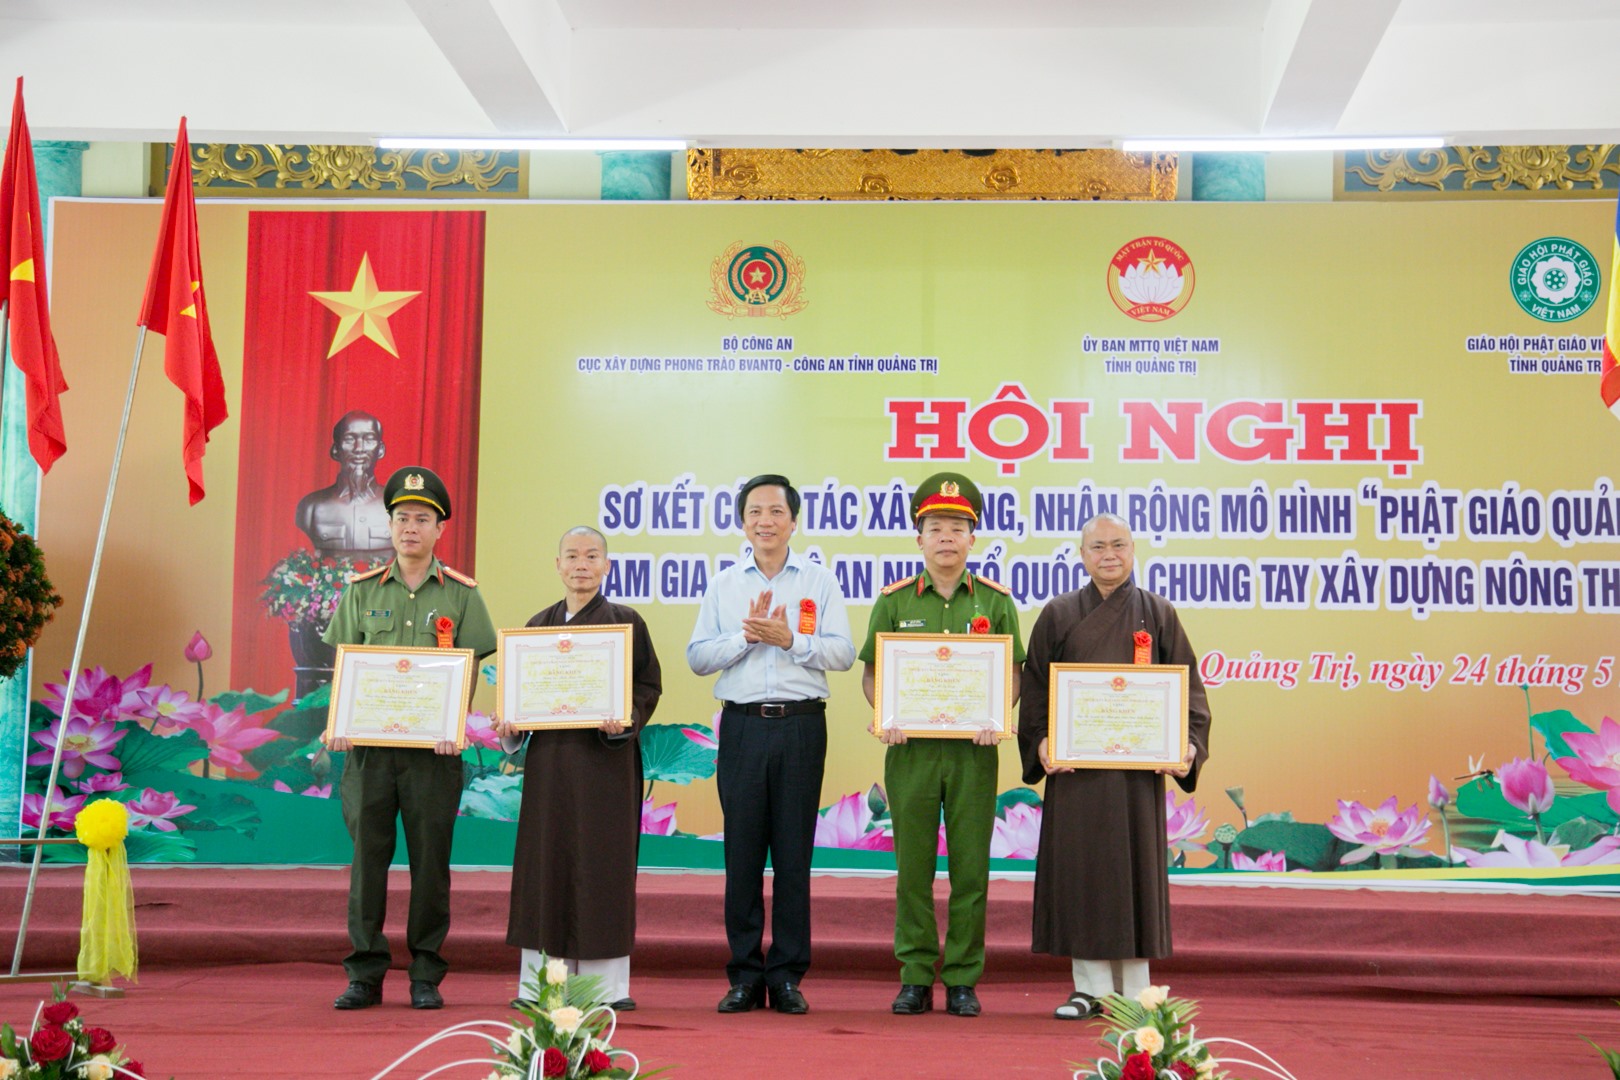 Phó Chủ tịch UBND tỉnh Hoàng Nam trao tặng bằng khen của UBND tỉnh cho các cá nhân, tập thể có nhiều thành tích trong xây dựng, nhân rộng mô hình “Phật giáo Quảng Trị tham gia bảo vệ ANTQ và chung tay xây dựng NTM” - Ảnh: Lê Trường